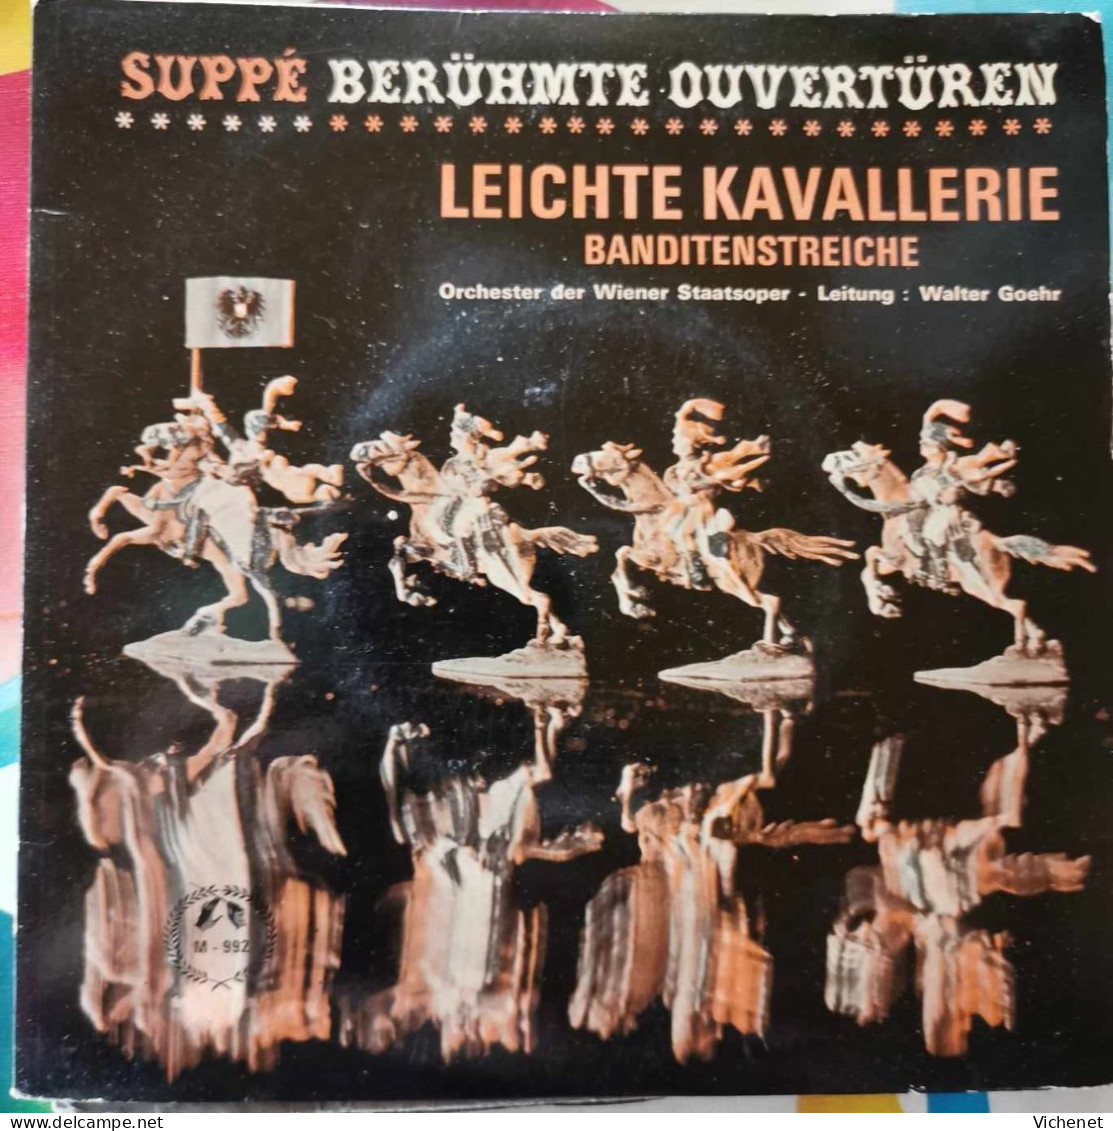 Suppé – Berühmte Ouvertüren - Leichte Kavallerie / Banditenstreiche -  45T - Classique